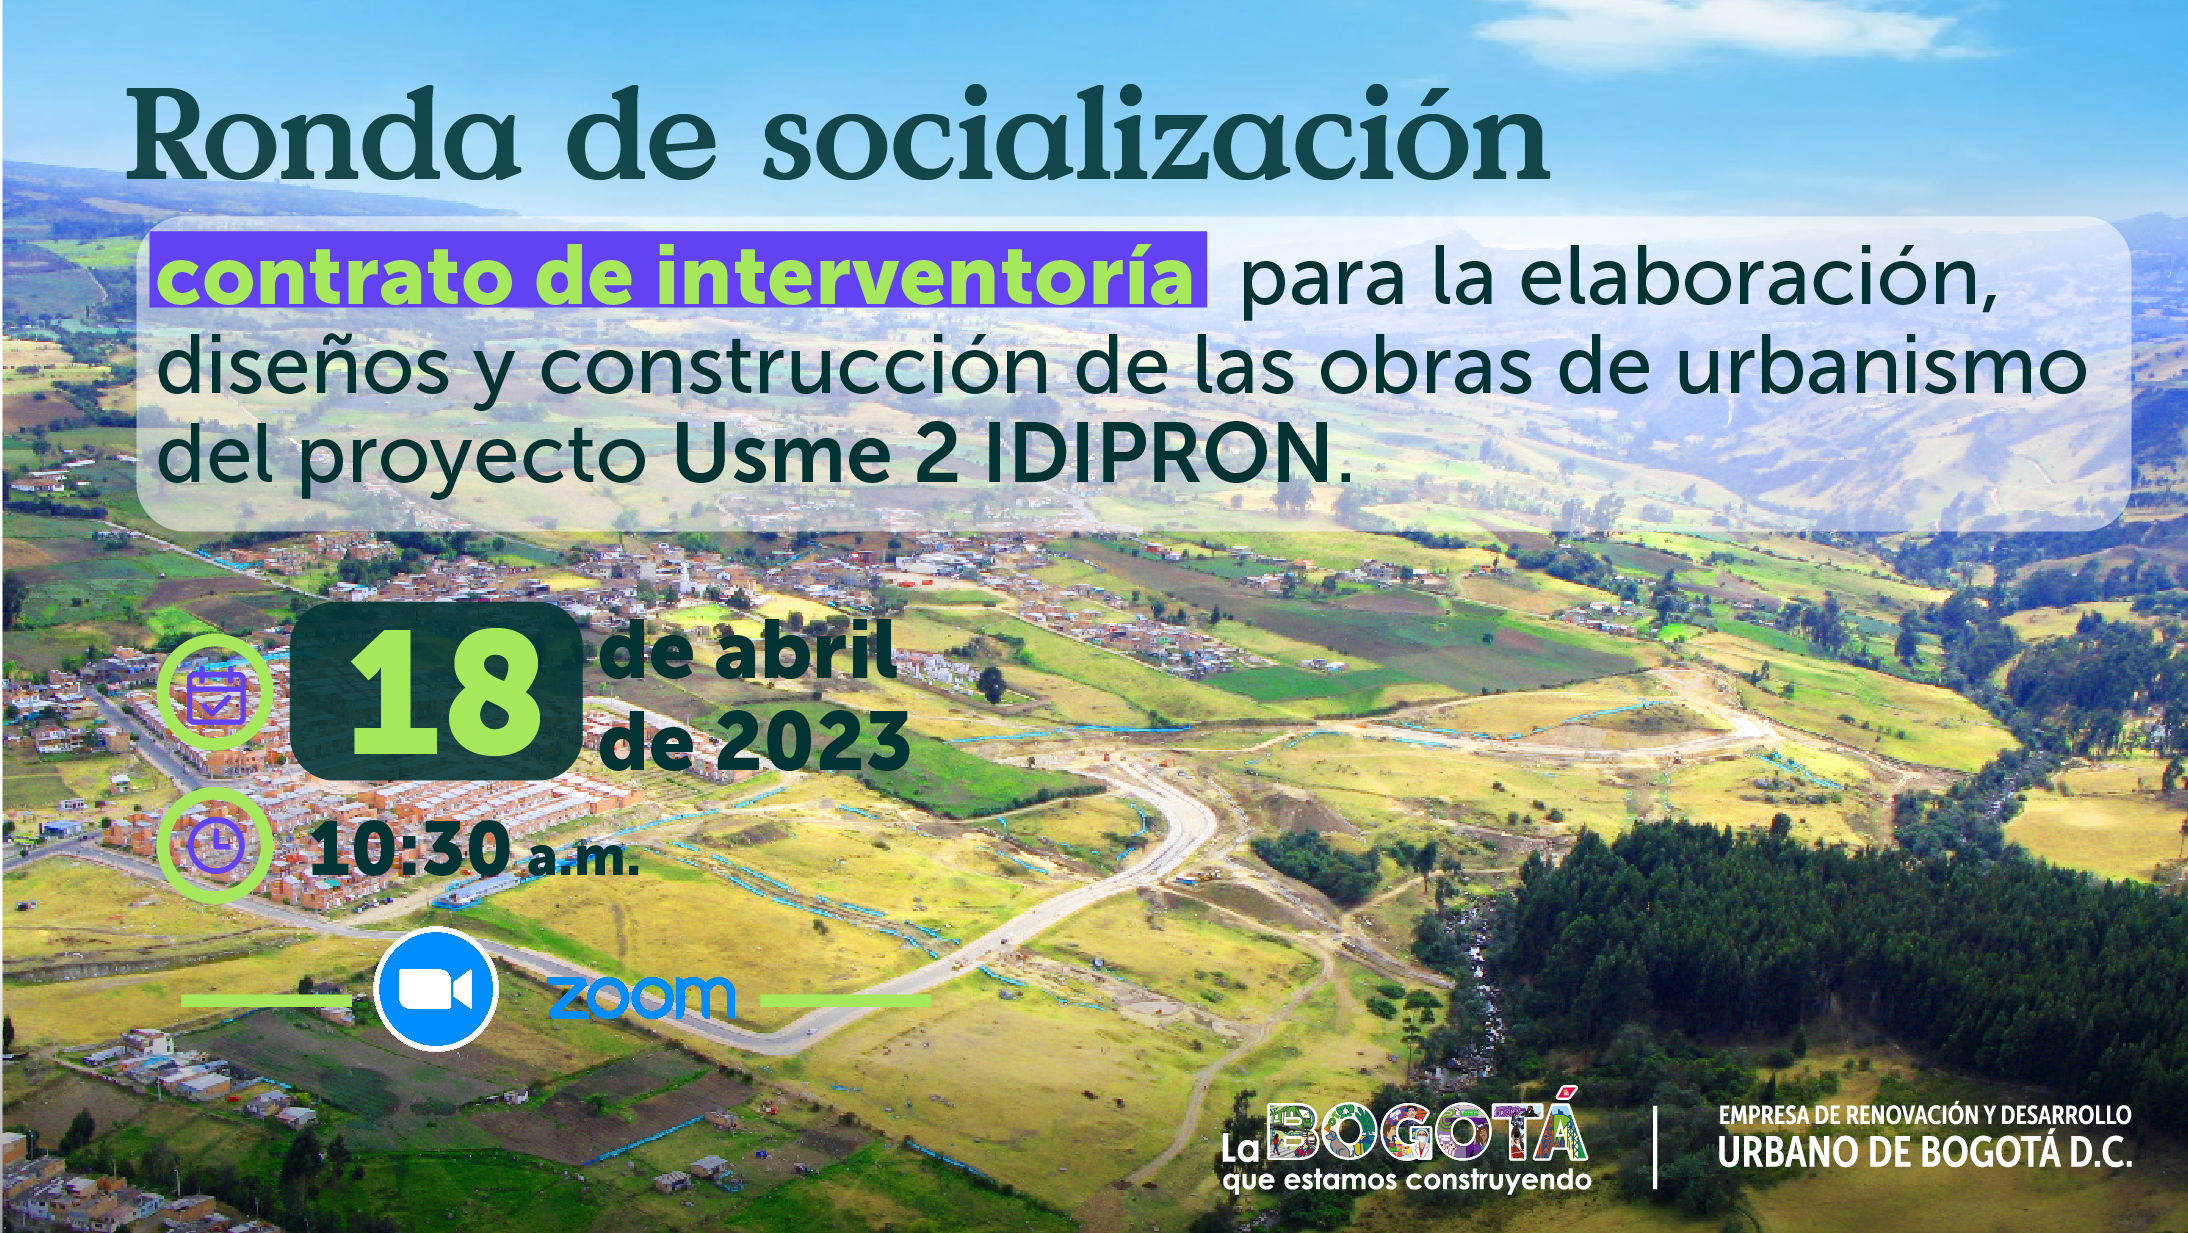 Trabajo sí hay. La Empresa de Renovación y Desarrollo Urbano de Bogotá busca Interventores para obras del proyecto Usme 2 IDIPRON